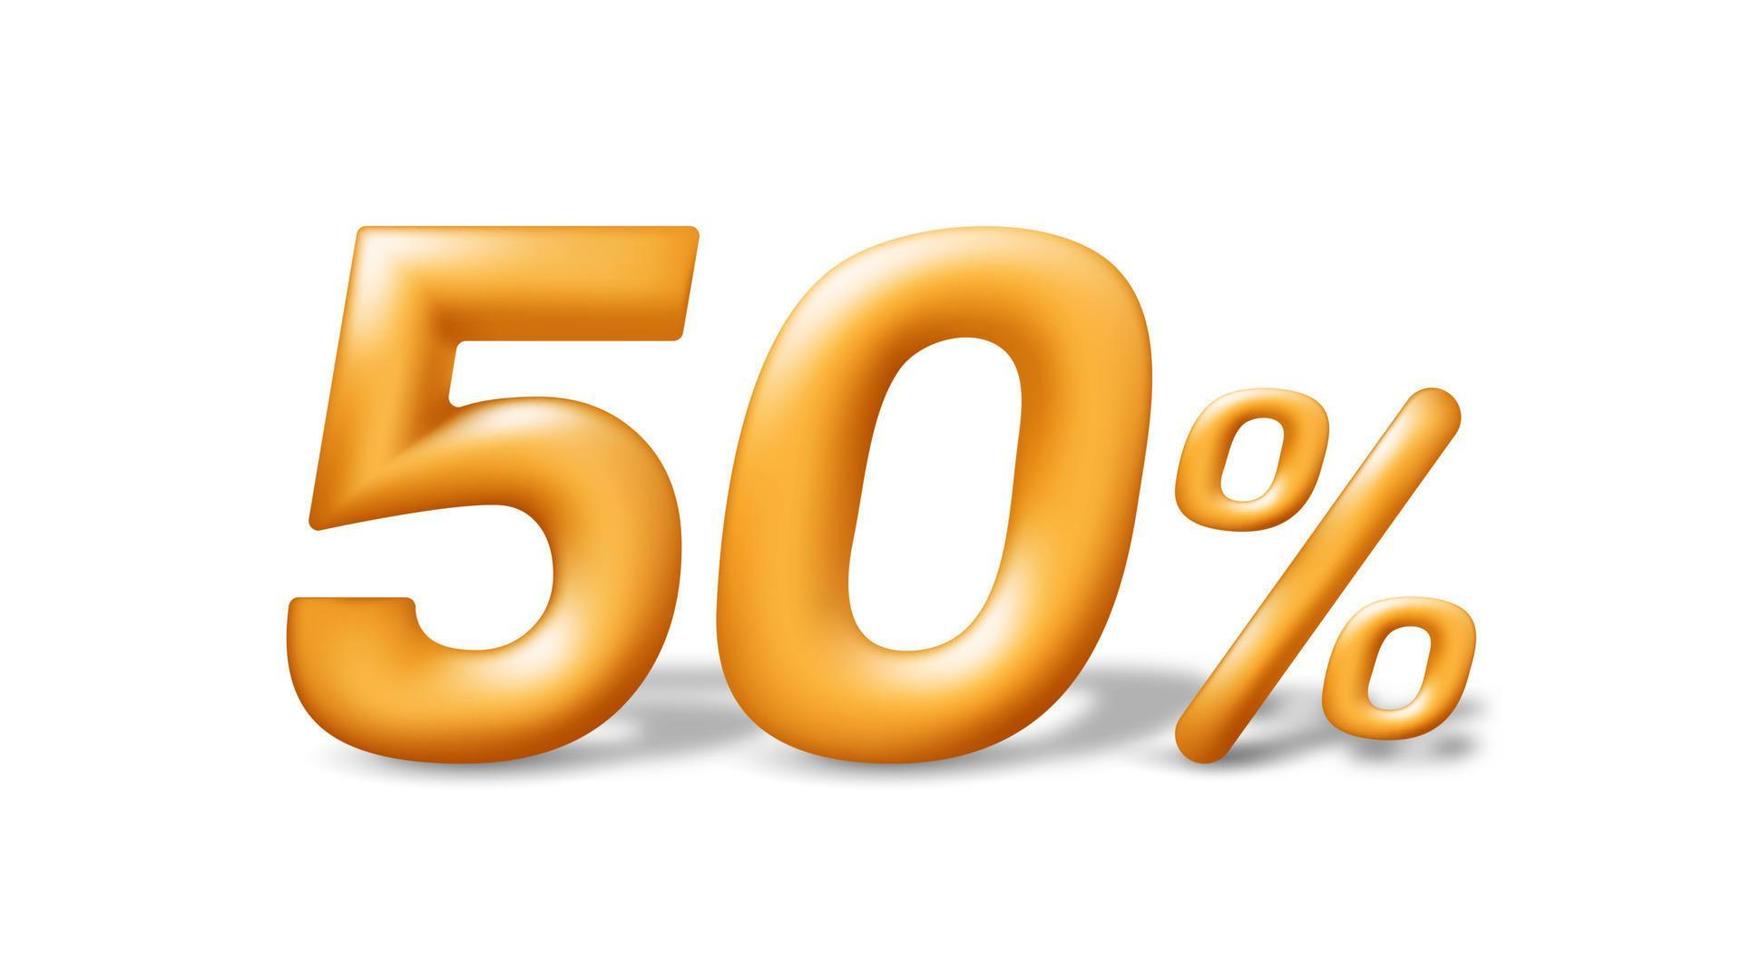 vente spéciale 50 pour cent de réduction. nombre 3d doré réaliste isolé sur fond blanc. illustration vectorielle vecteur